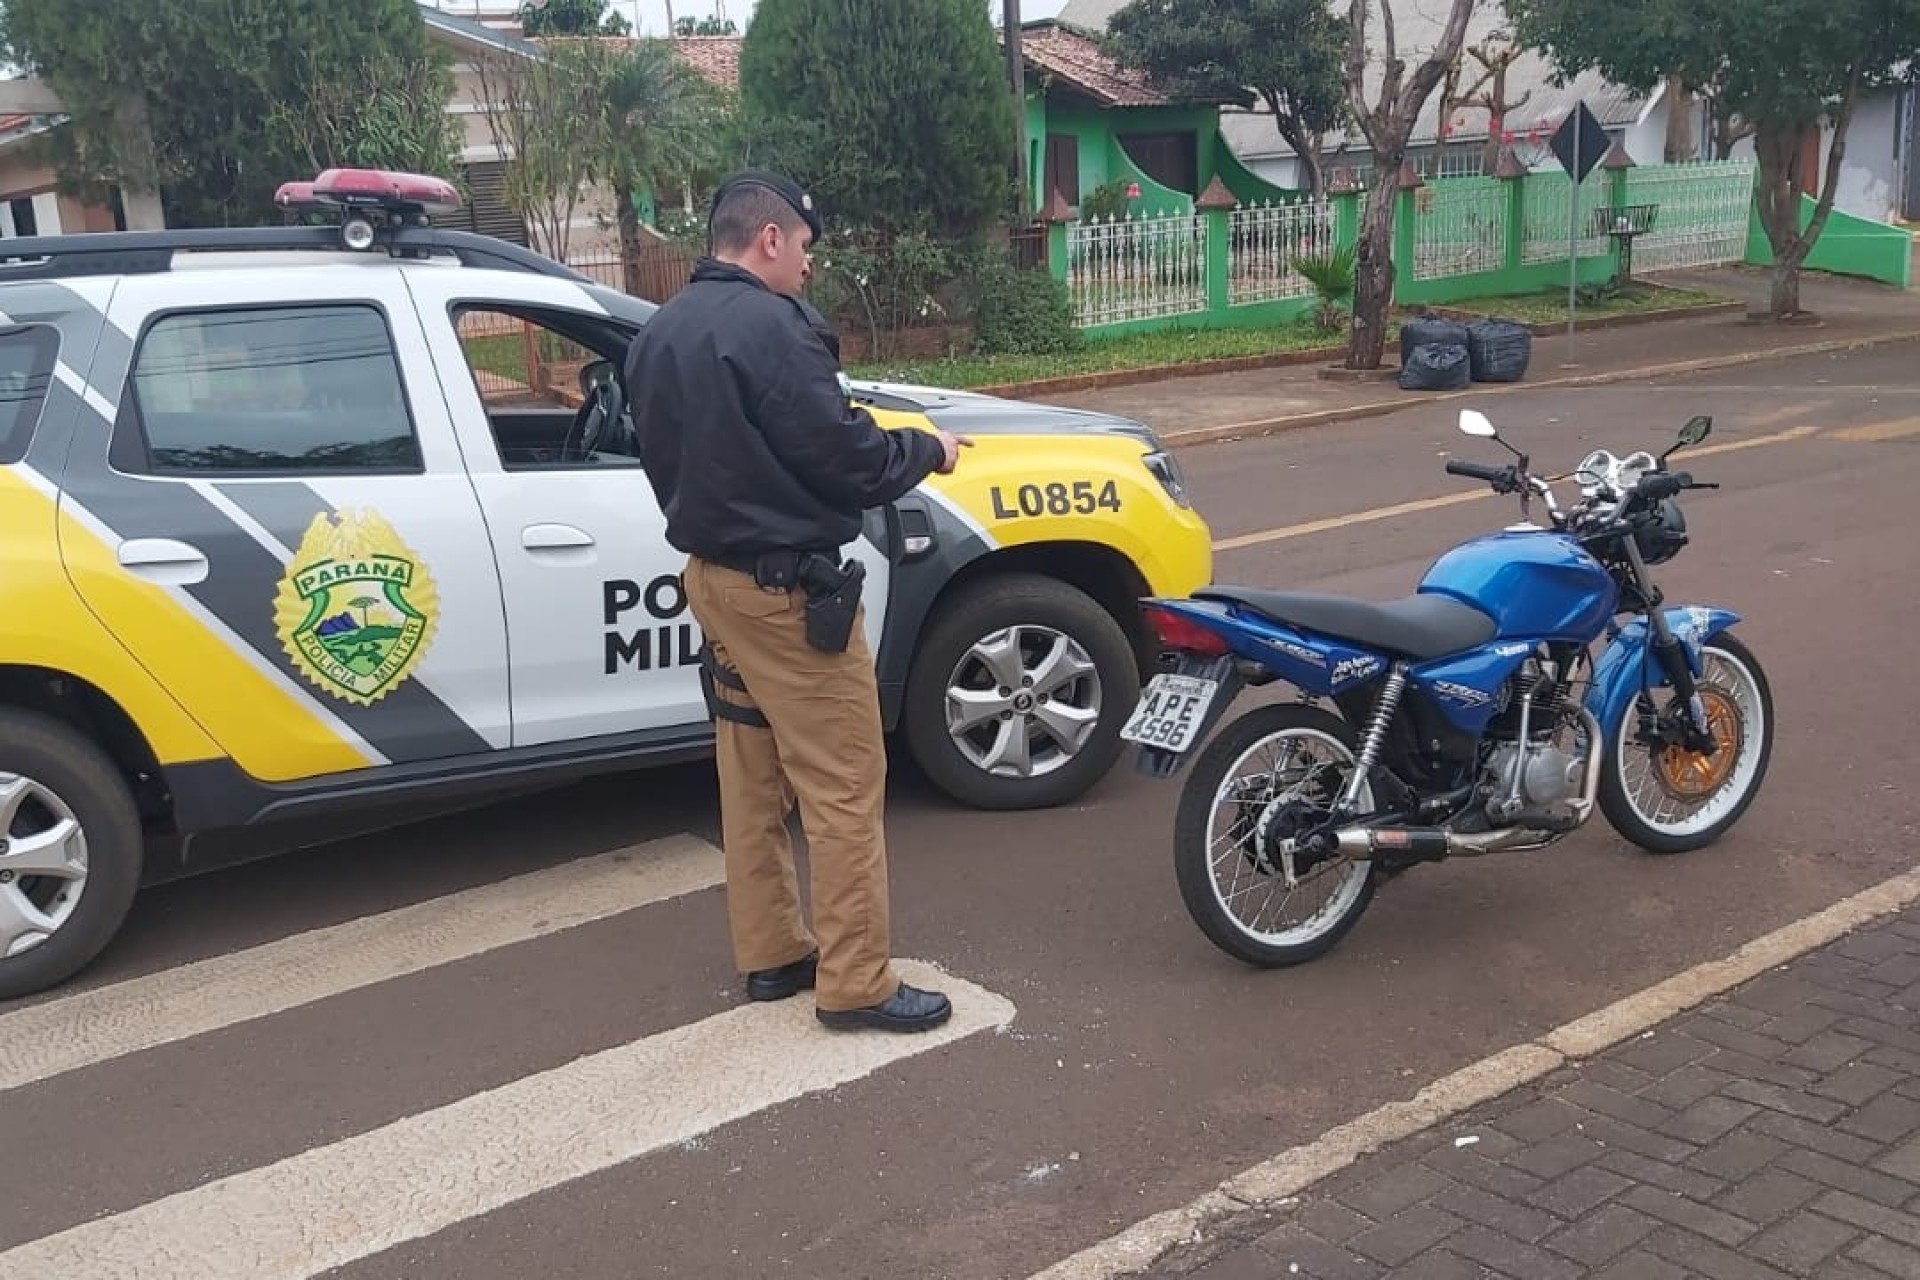 Policia Militar de Itaipulândia intensifica abordagens a motocicletas barulhentas